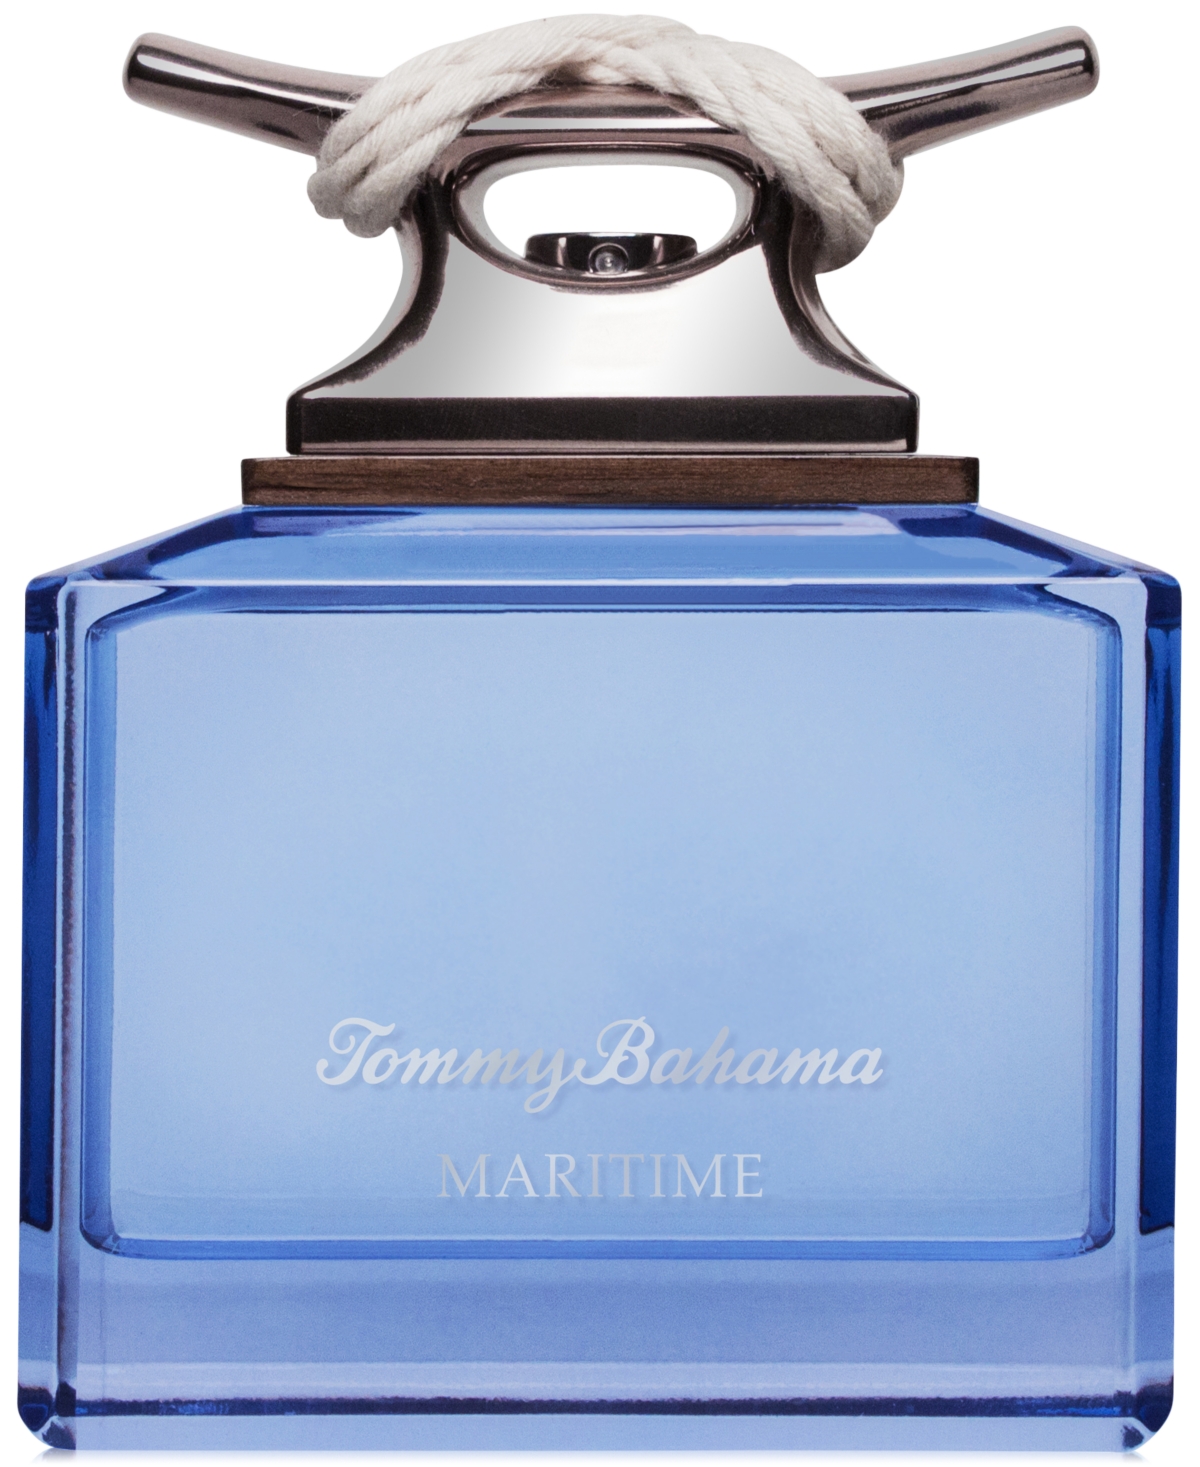 UPC 603531787237 - Tommy Bahama Tommy Bahama Maritime Eau de Cologne ...